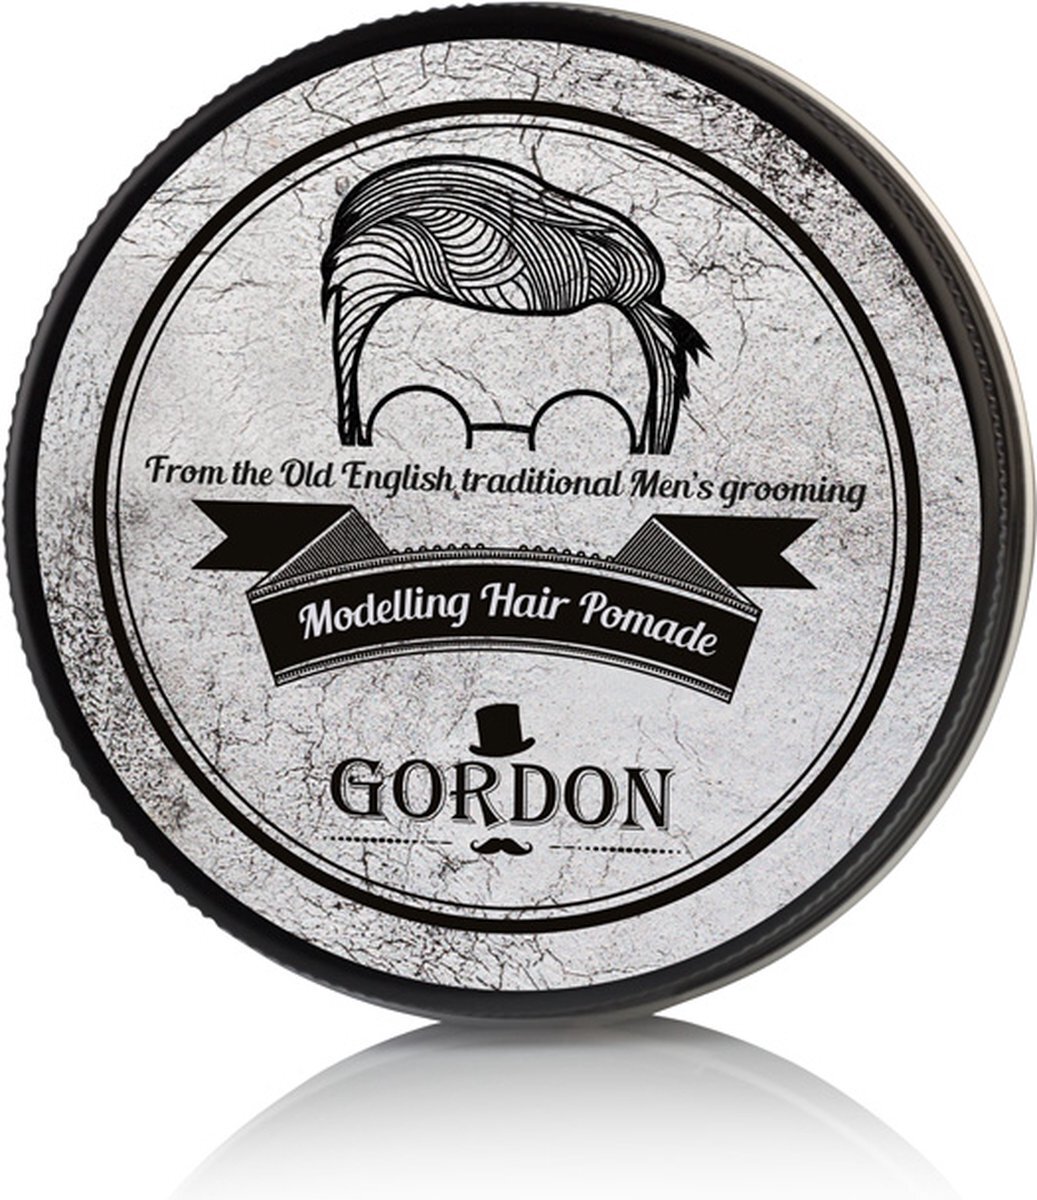 Gordon Modelling Hair Pomade 100ml